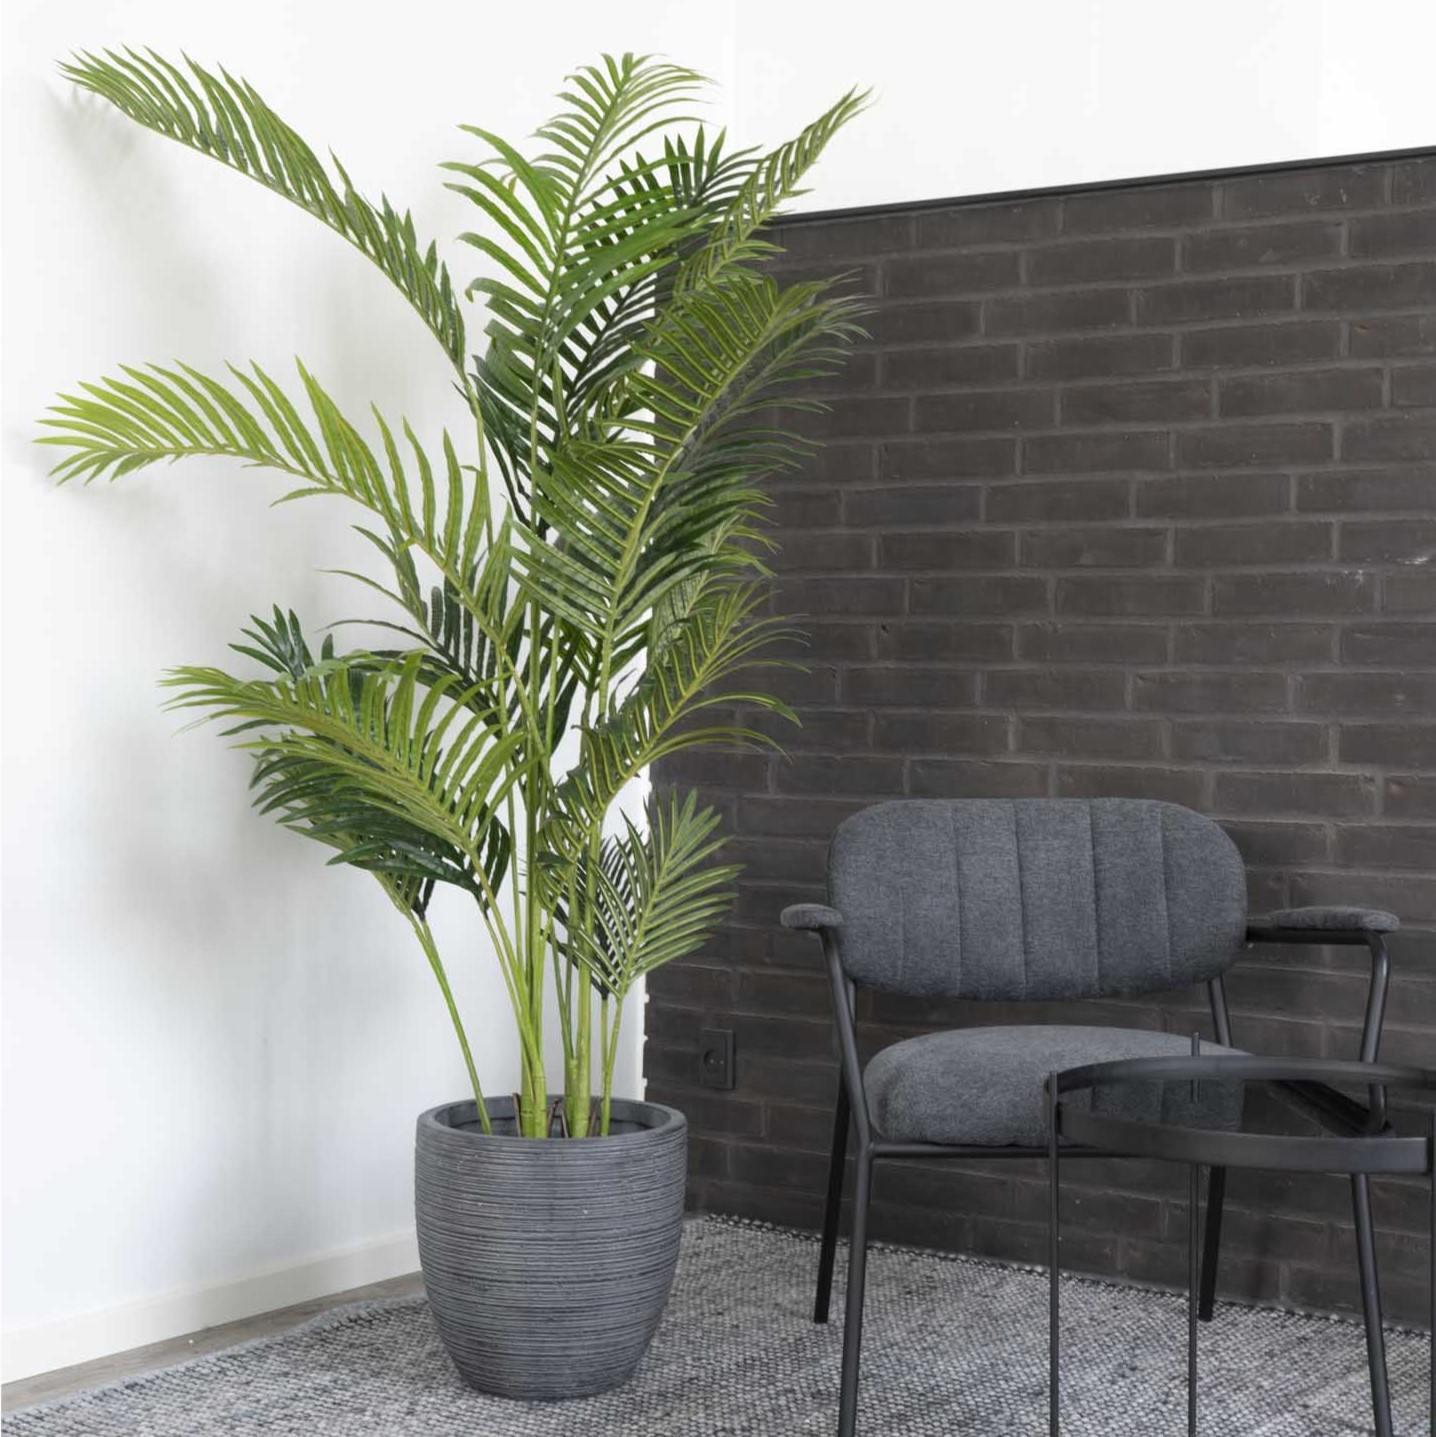 Billede af Areca palme - Kunstig plante, højde 175 cm.